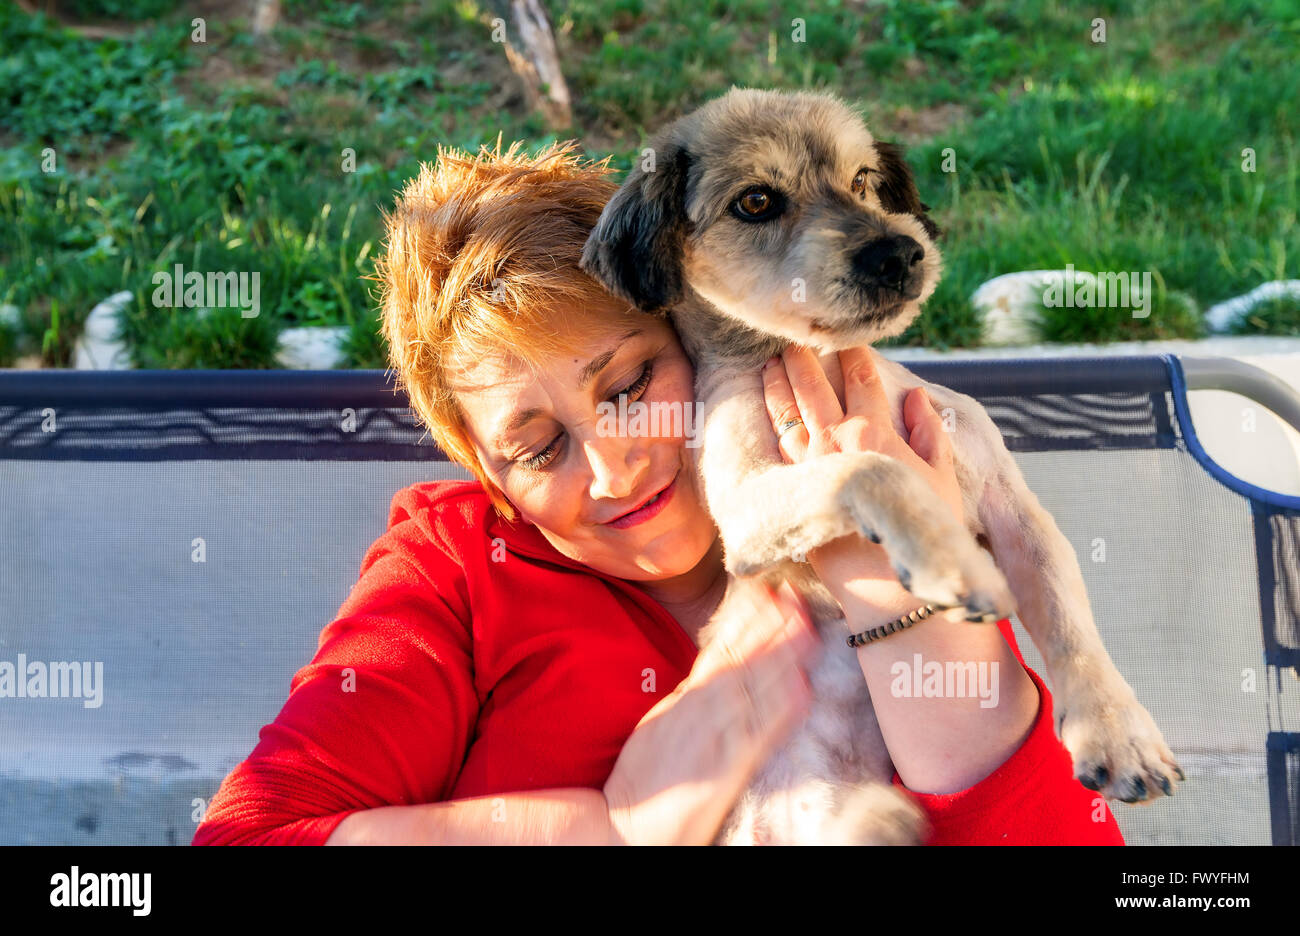 Hunedoara, Roumanie - 01 juillet 2014 : Happy Blonde Woman embrayer sur la poitrine en Hunedoara chien nouvellement adoptée le 1 juillet 2014 Banque D'Images